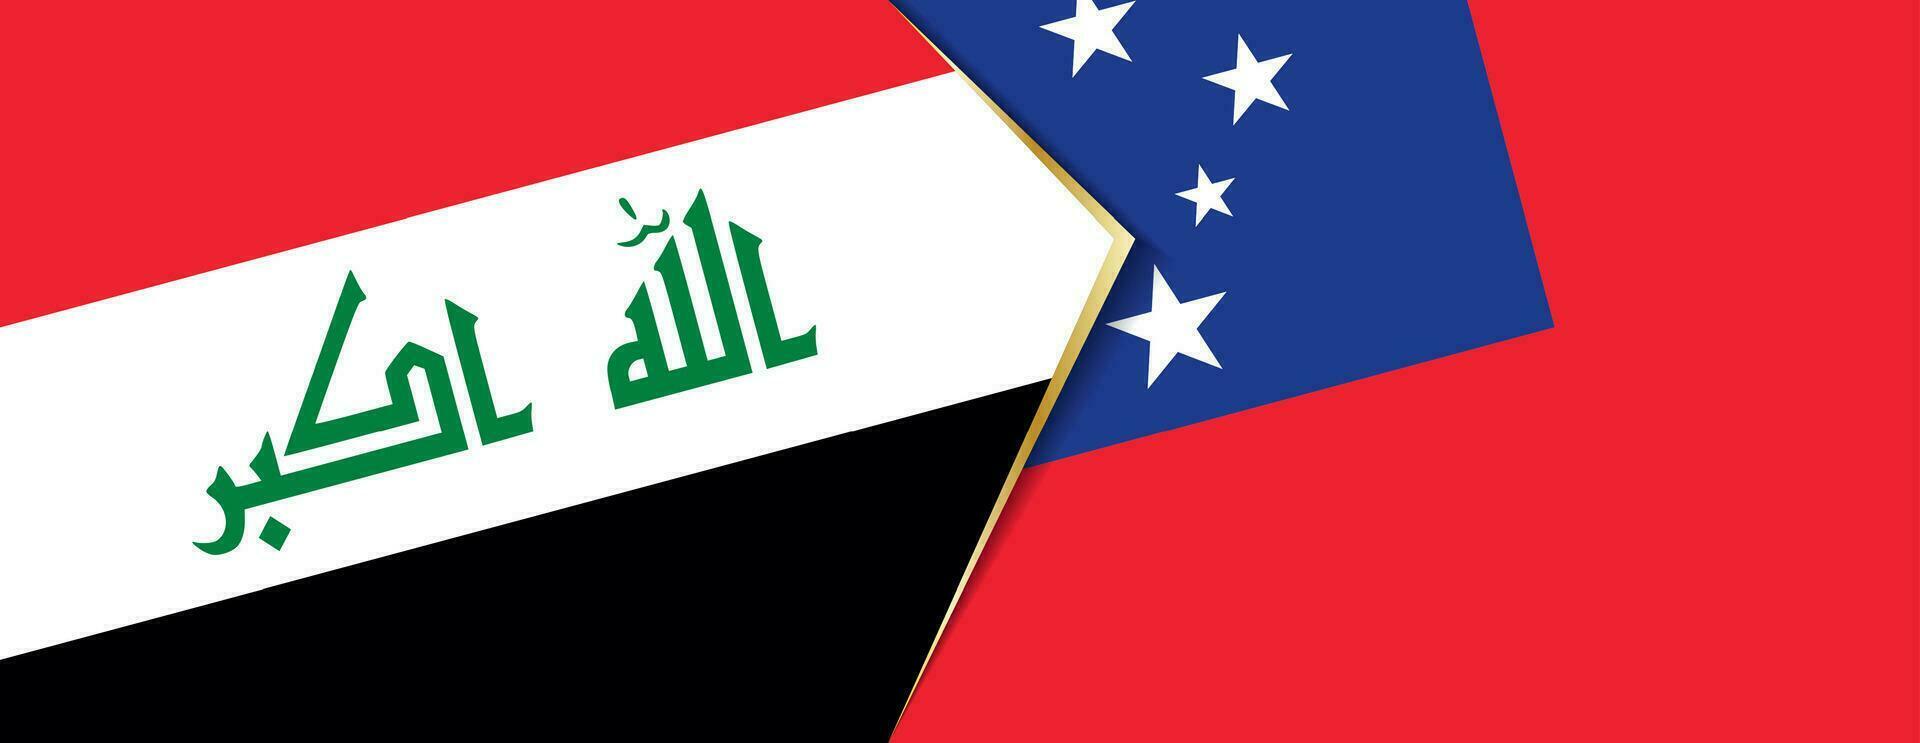 Irak und Samoa Flaggen, zwei Vektor Flaggen.